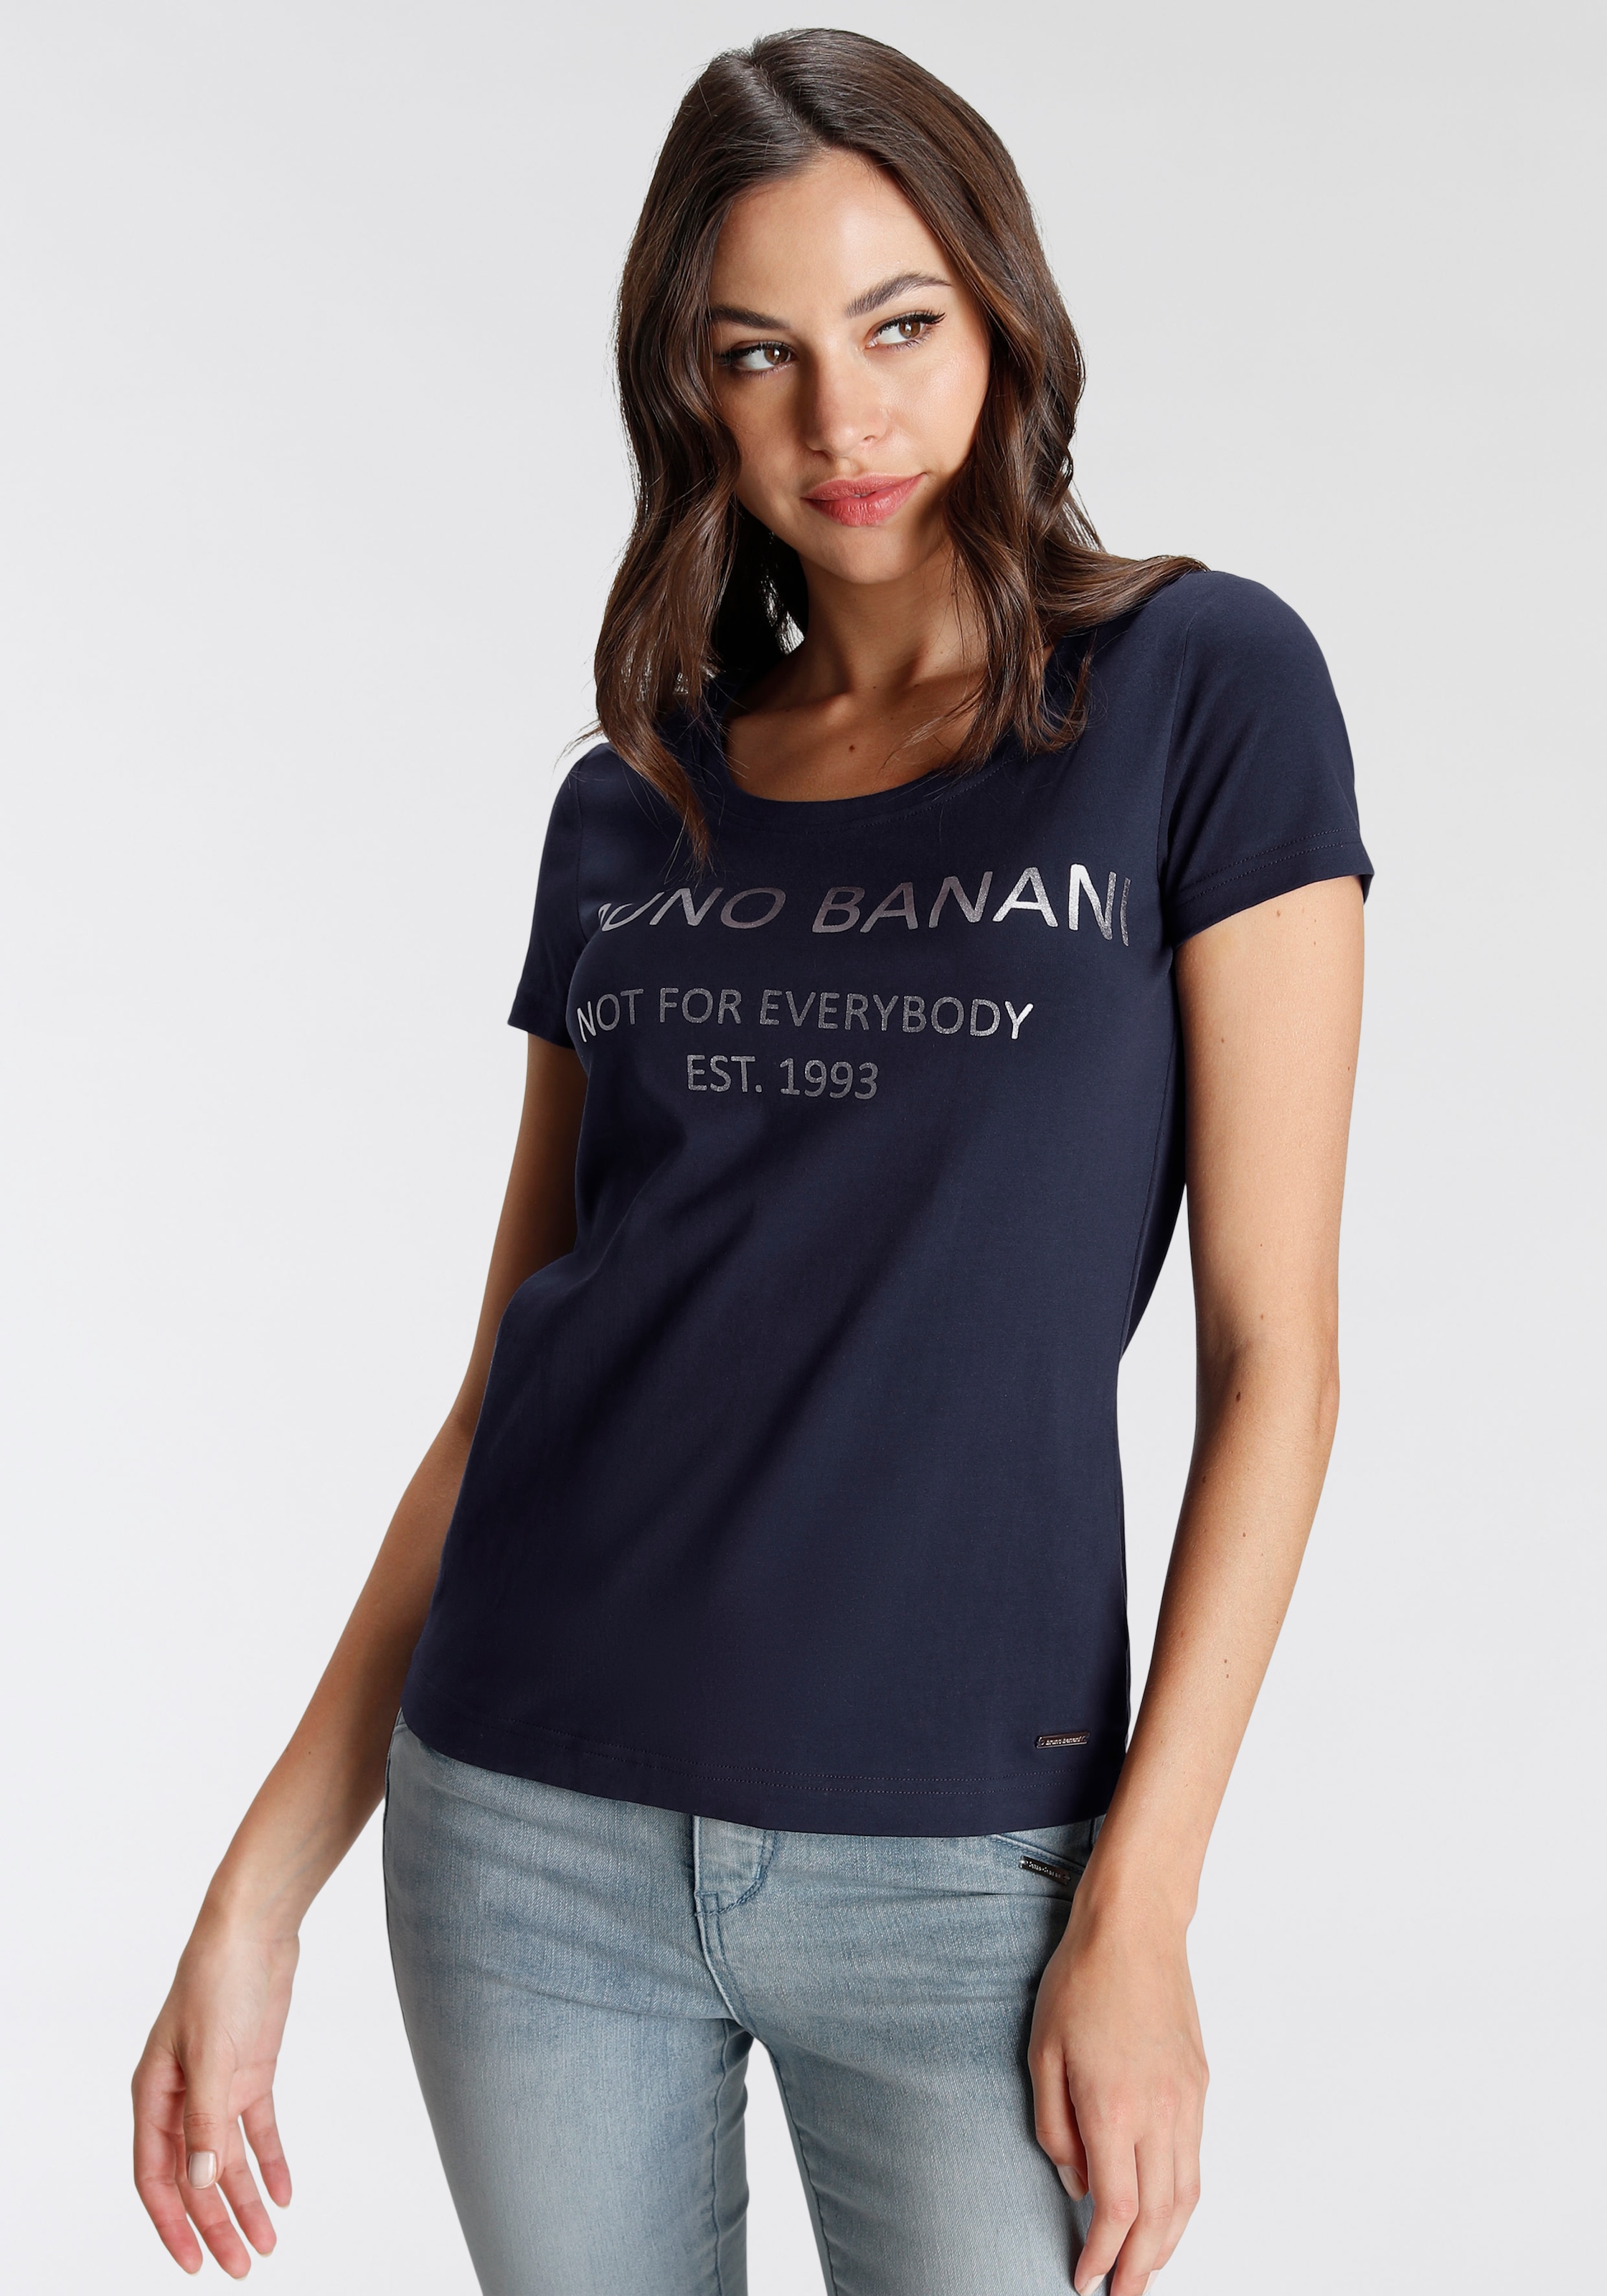 KOLLEKTION online T-Shirt, NEUE mit kaufen OTTO Bruno Banani Logodruck bei goldfarbenem